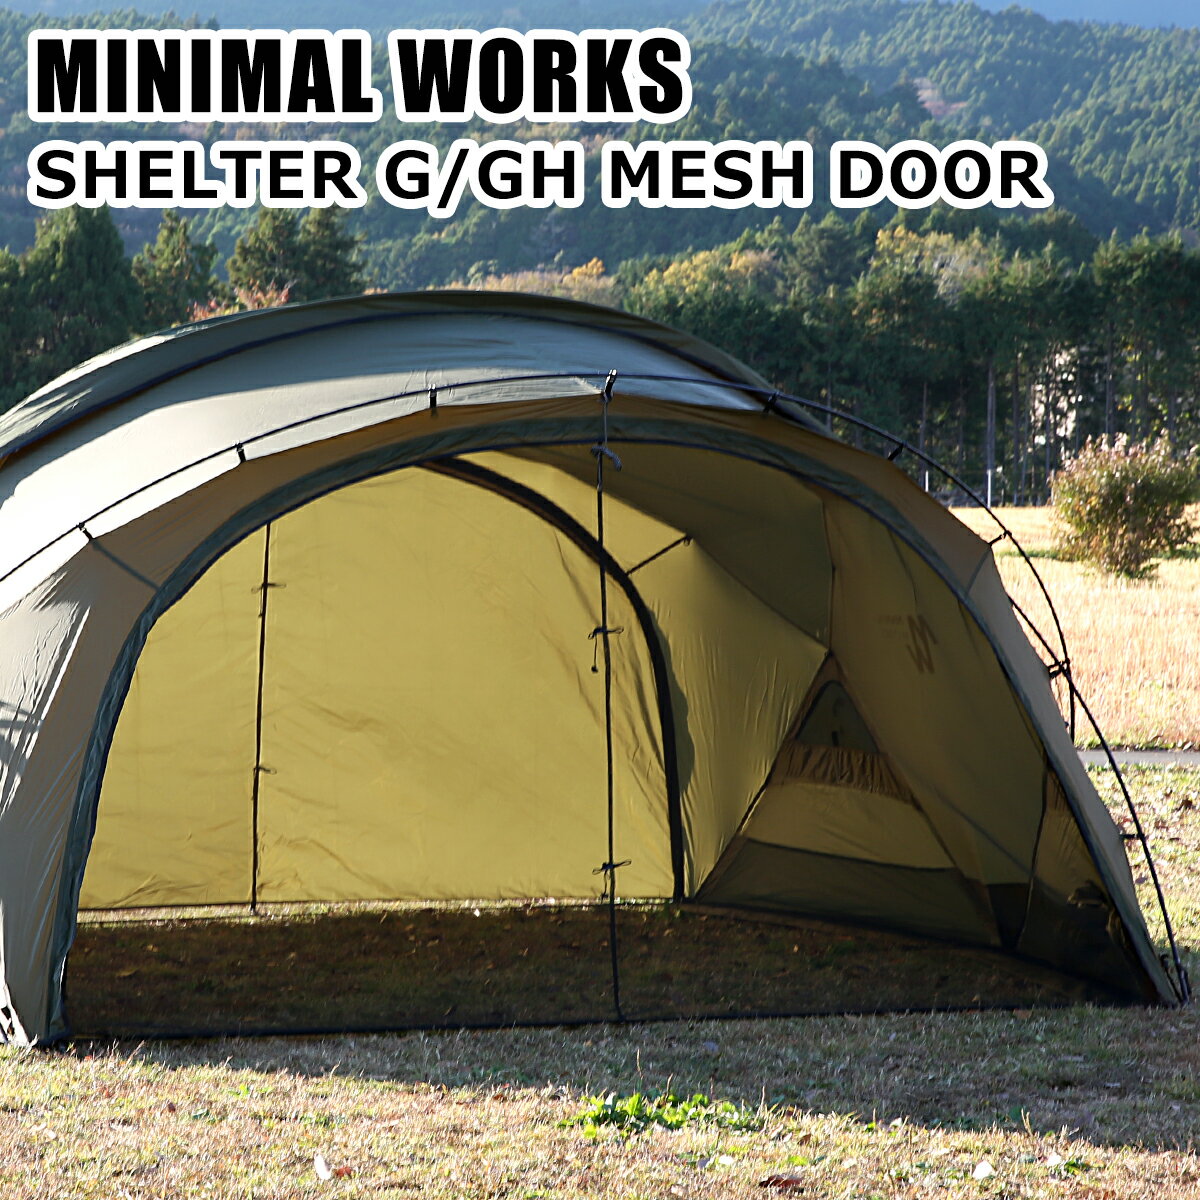 【ポイント5倍 6/1】MINIMAL WORKS ミニマルワークス SHELTER G/GH MESH DOOR シェルターG専用 メッシュドア MGSHDO02SG171DO4BK テント キャンプ アウトドア おひとり様最大2点限り